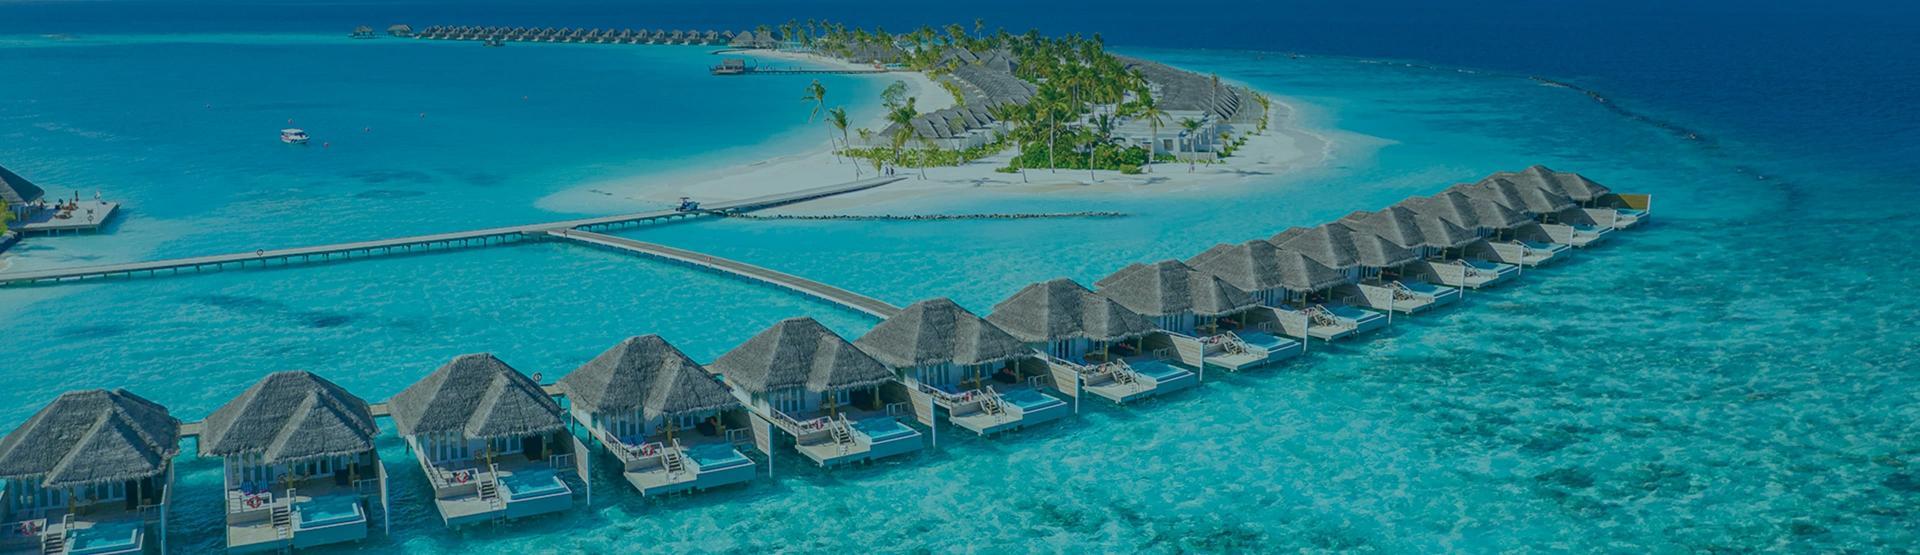 ابحث عن الفنادق في جزر المالديف